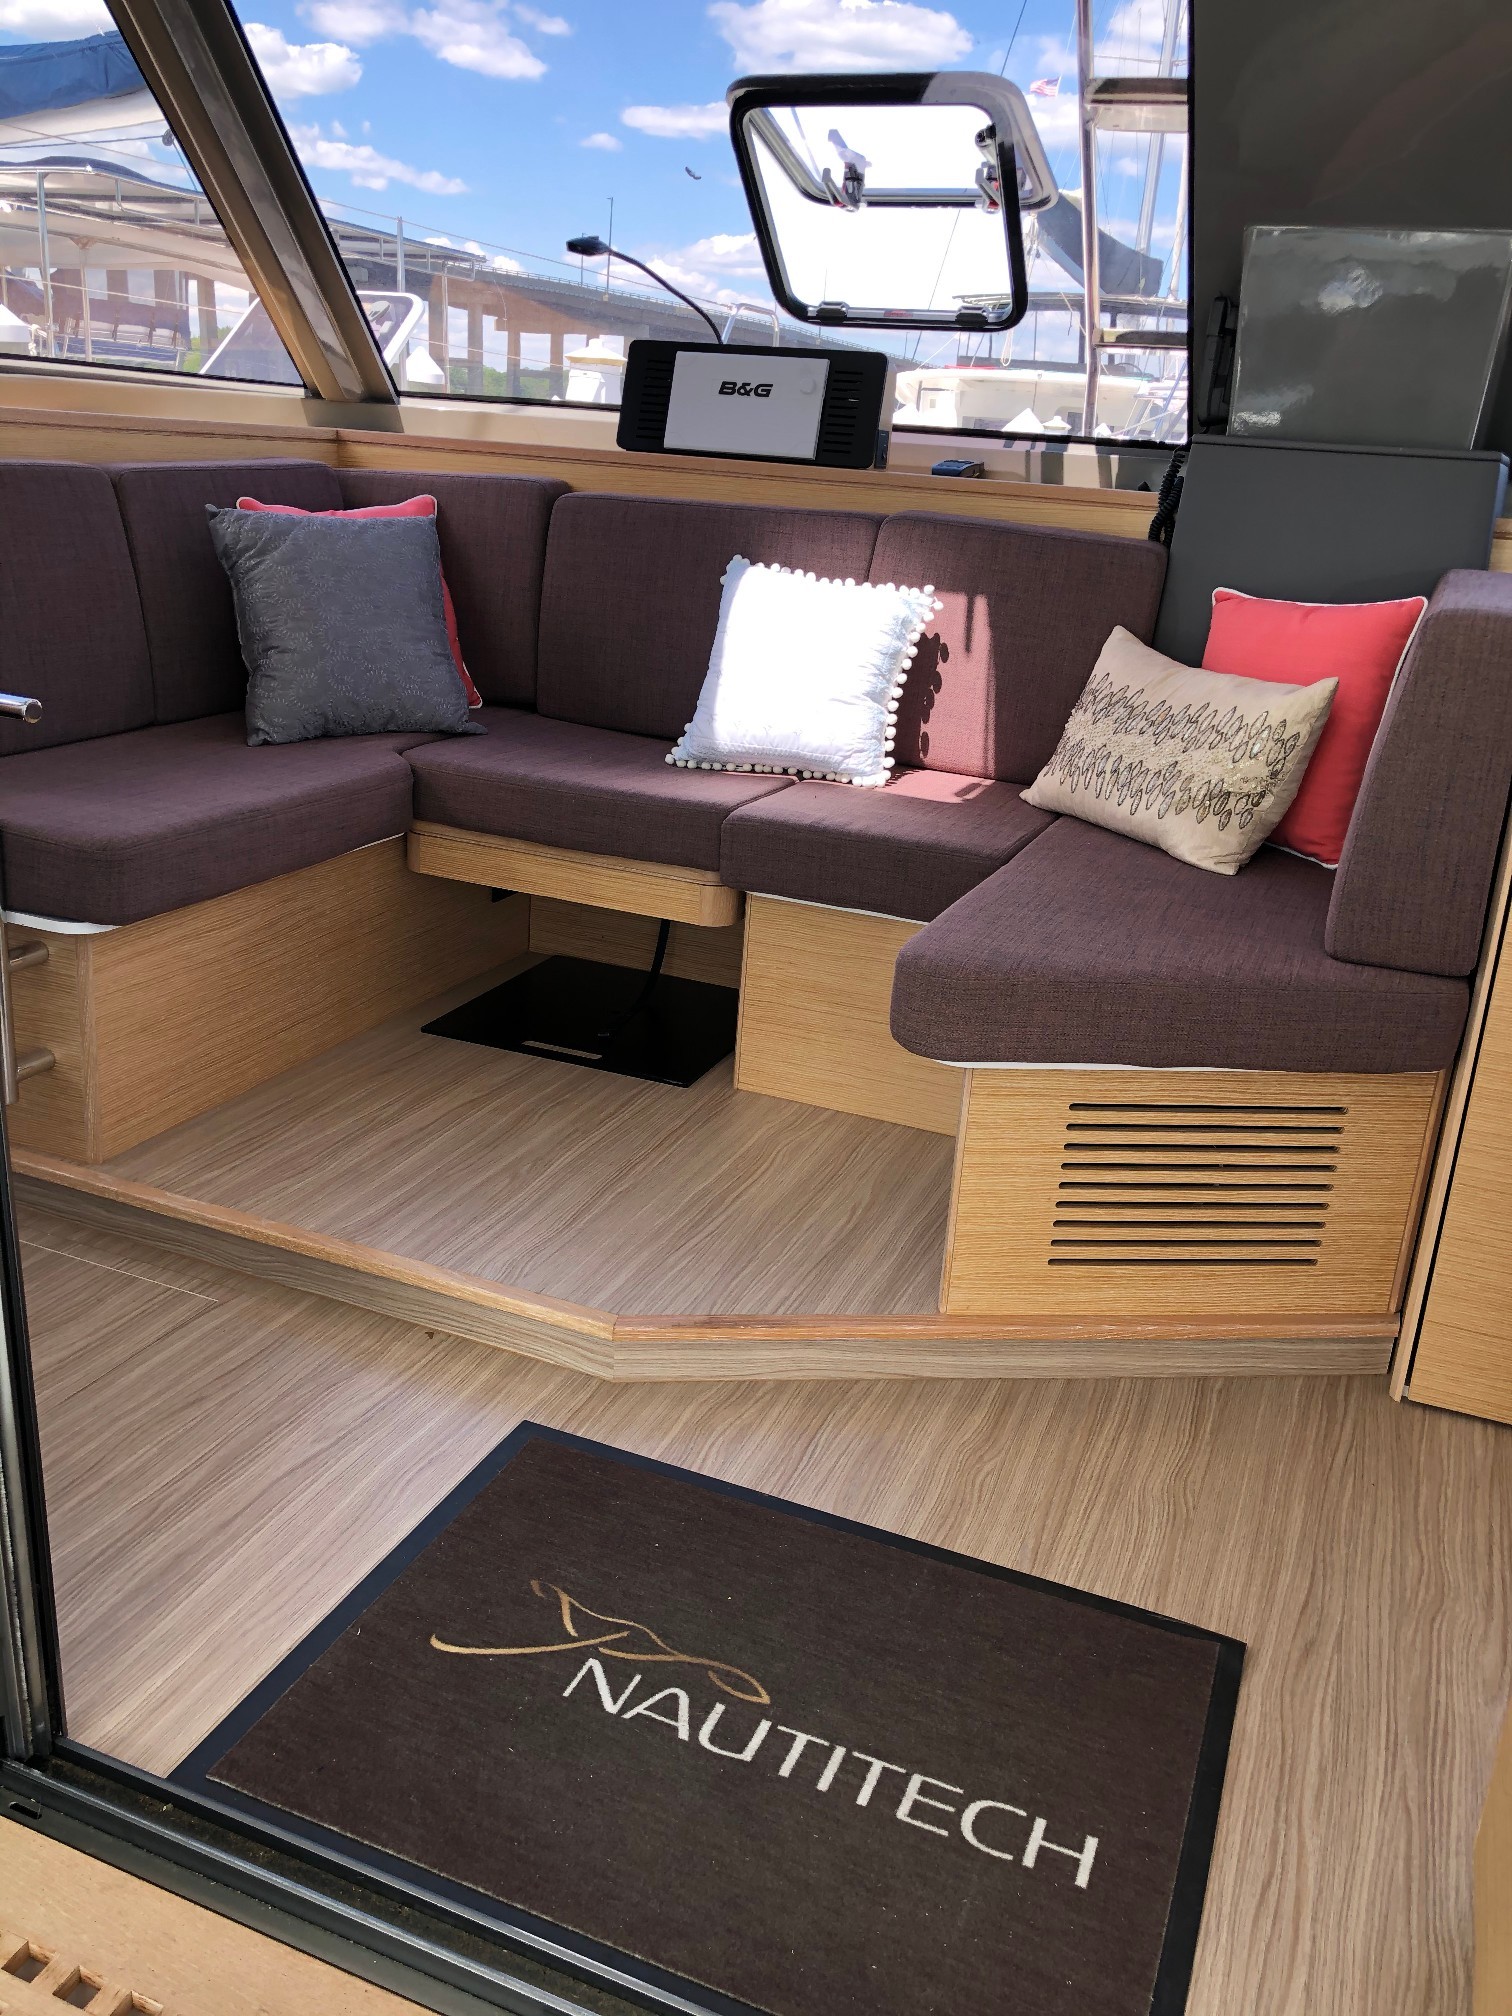 New Sail Catamaran for Sale 2019 Nautitech 40 Open Layout & Accommodations